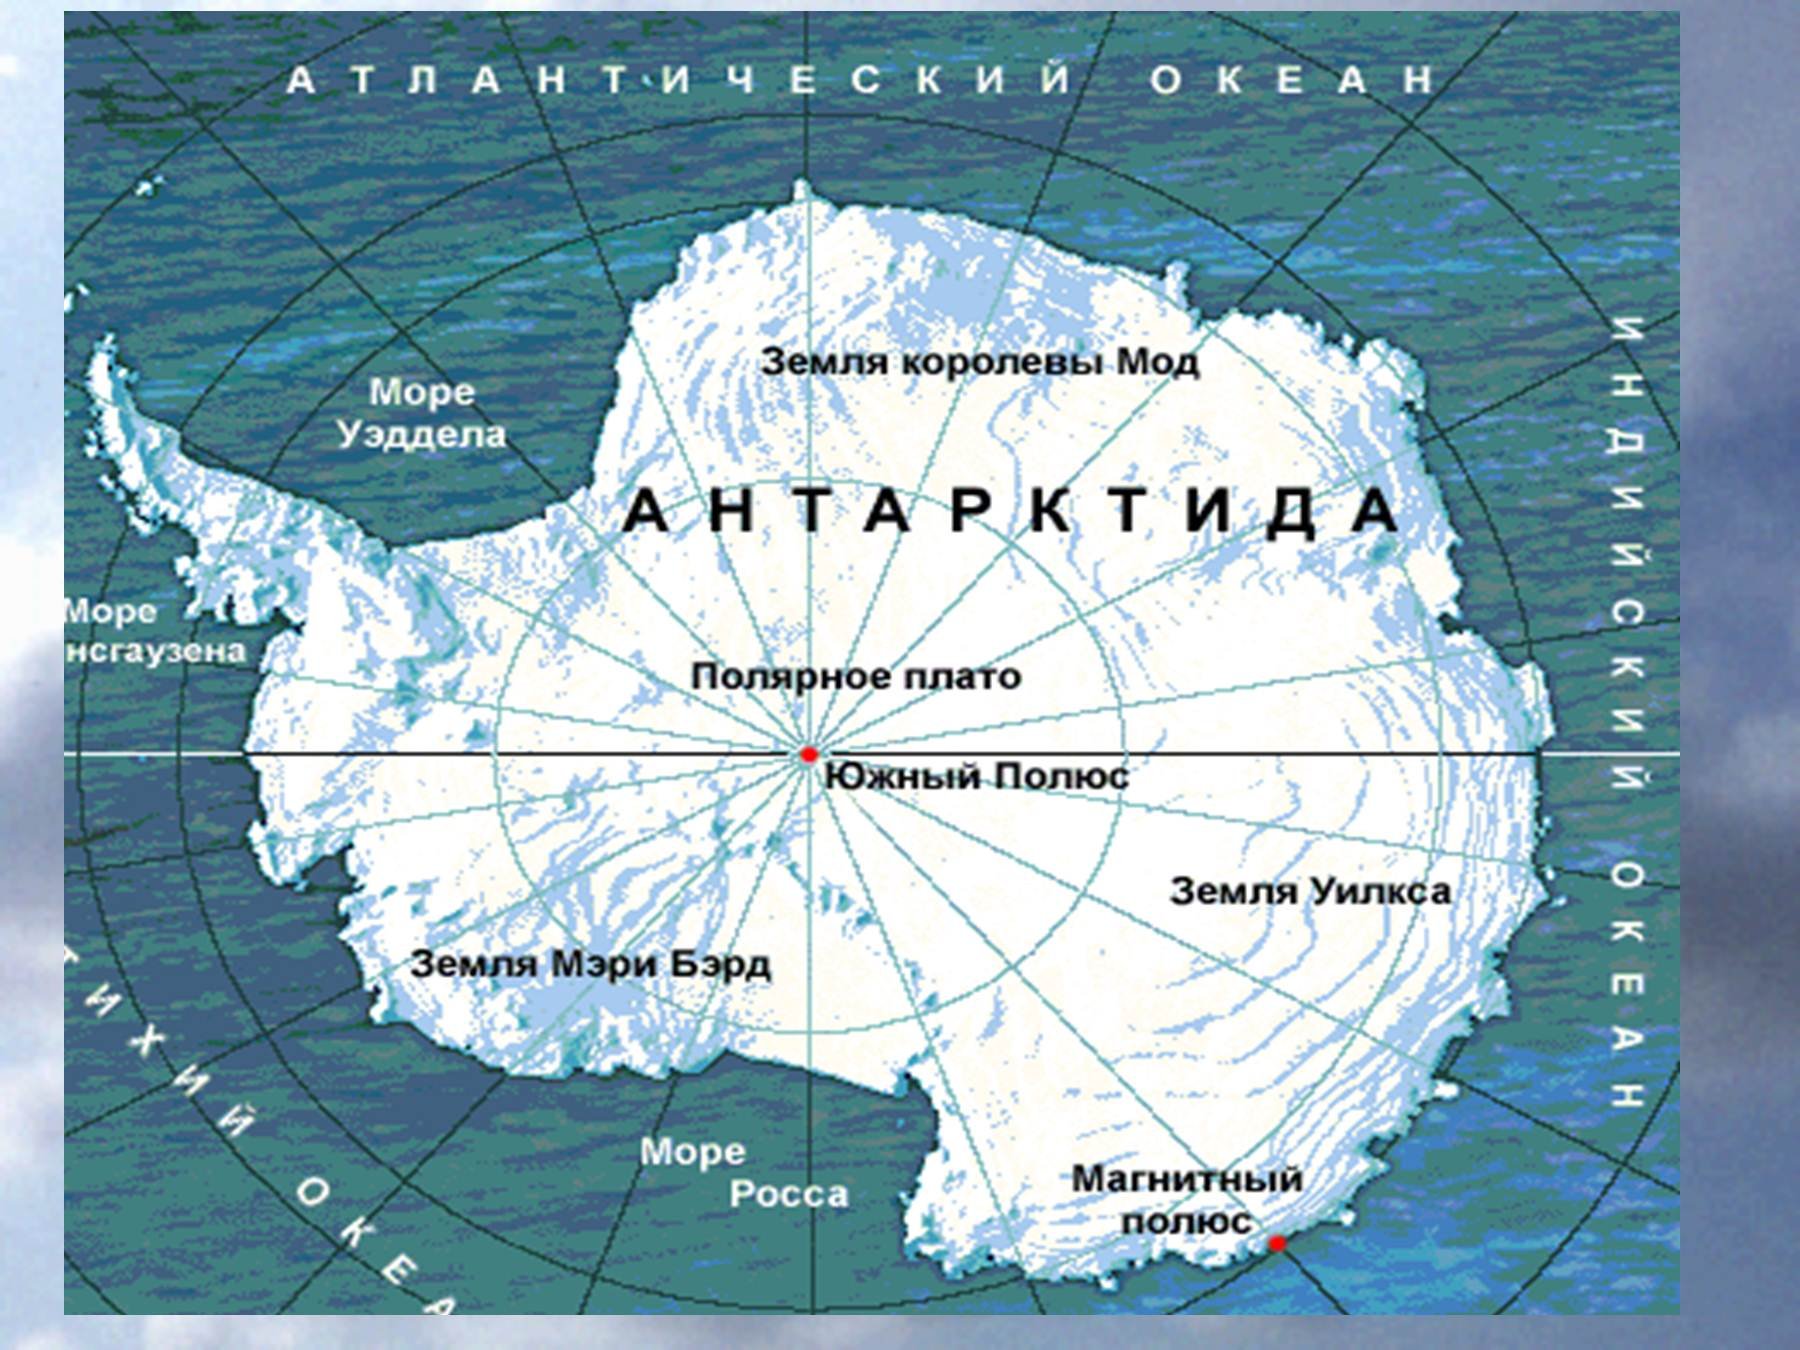 Индийский океан антарктида. Карта Антарктиды моря омывающие Антарктиду. Антарктида моря Росса Уэдделла Беллинсгаузена Амундсена. Моря: Амундсена, Беллинсгаузена, Росса, Уэдделла..